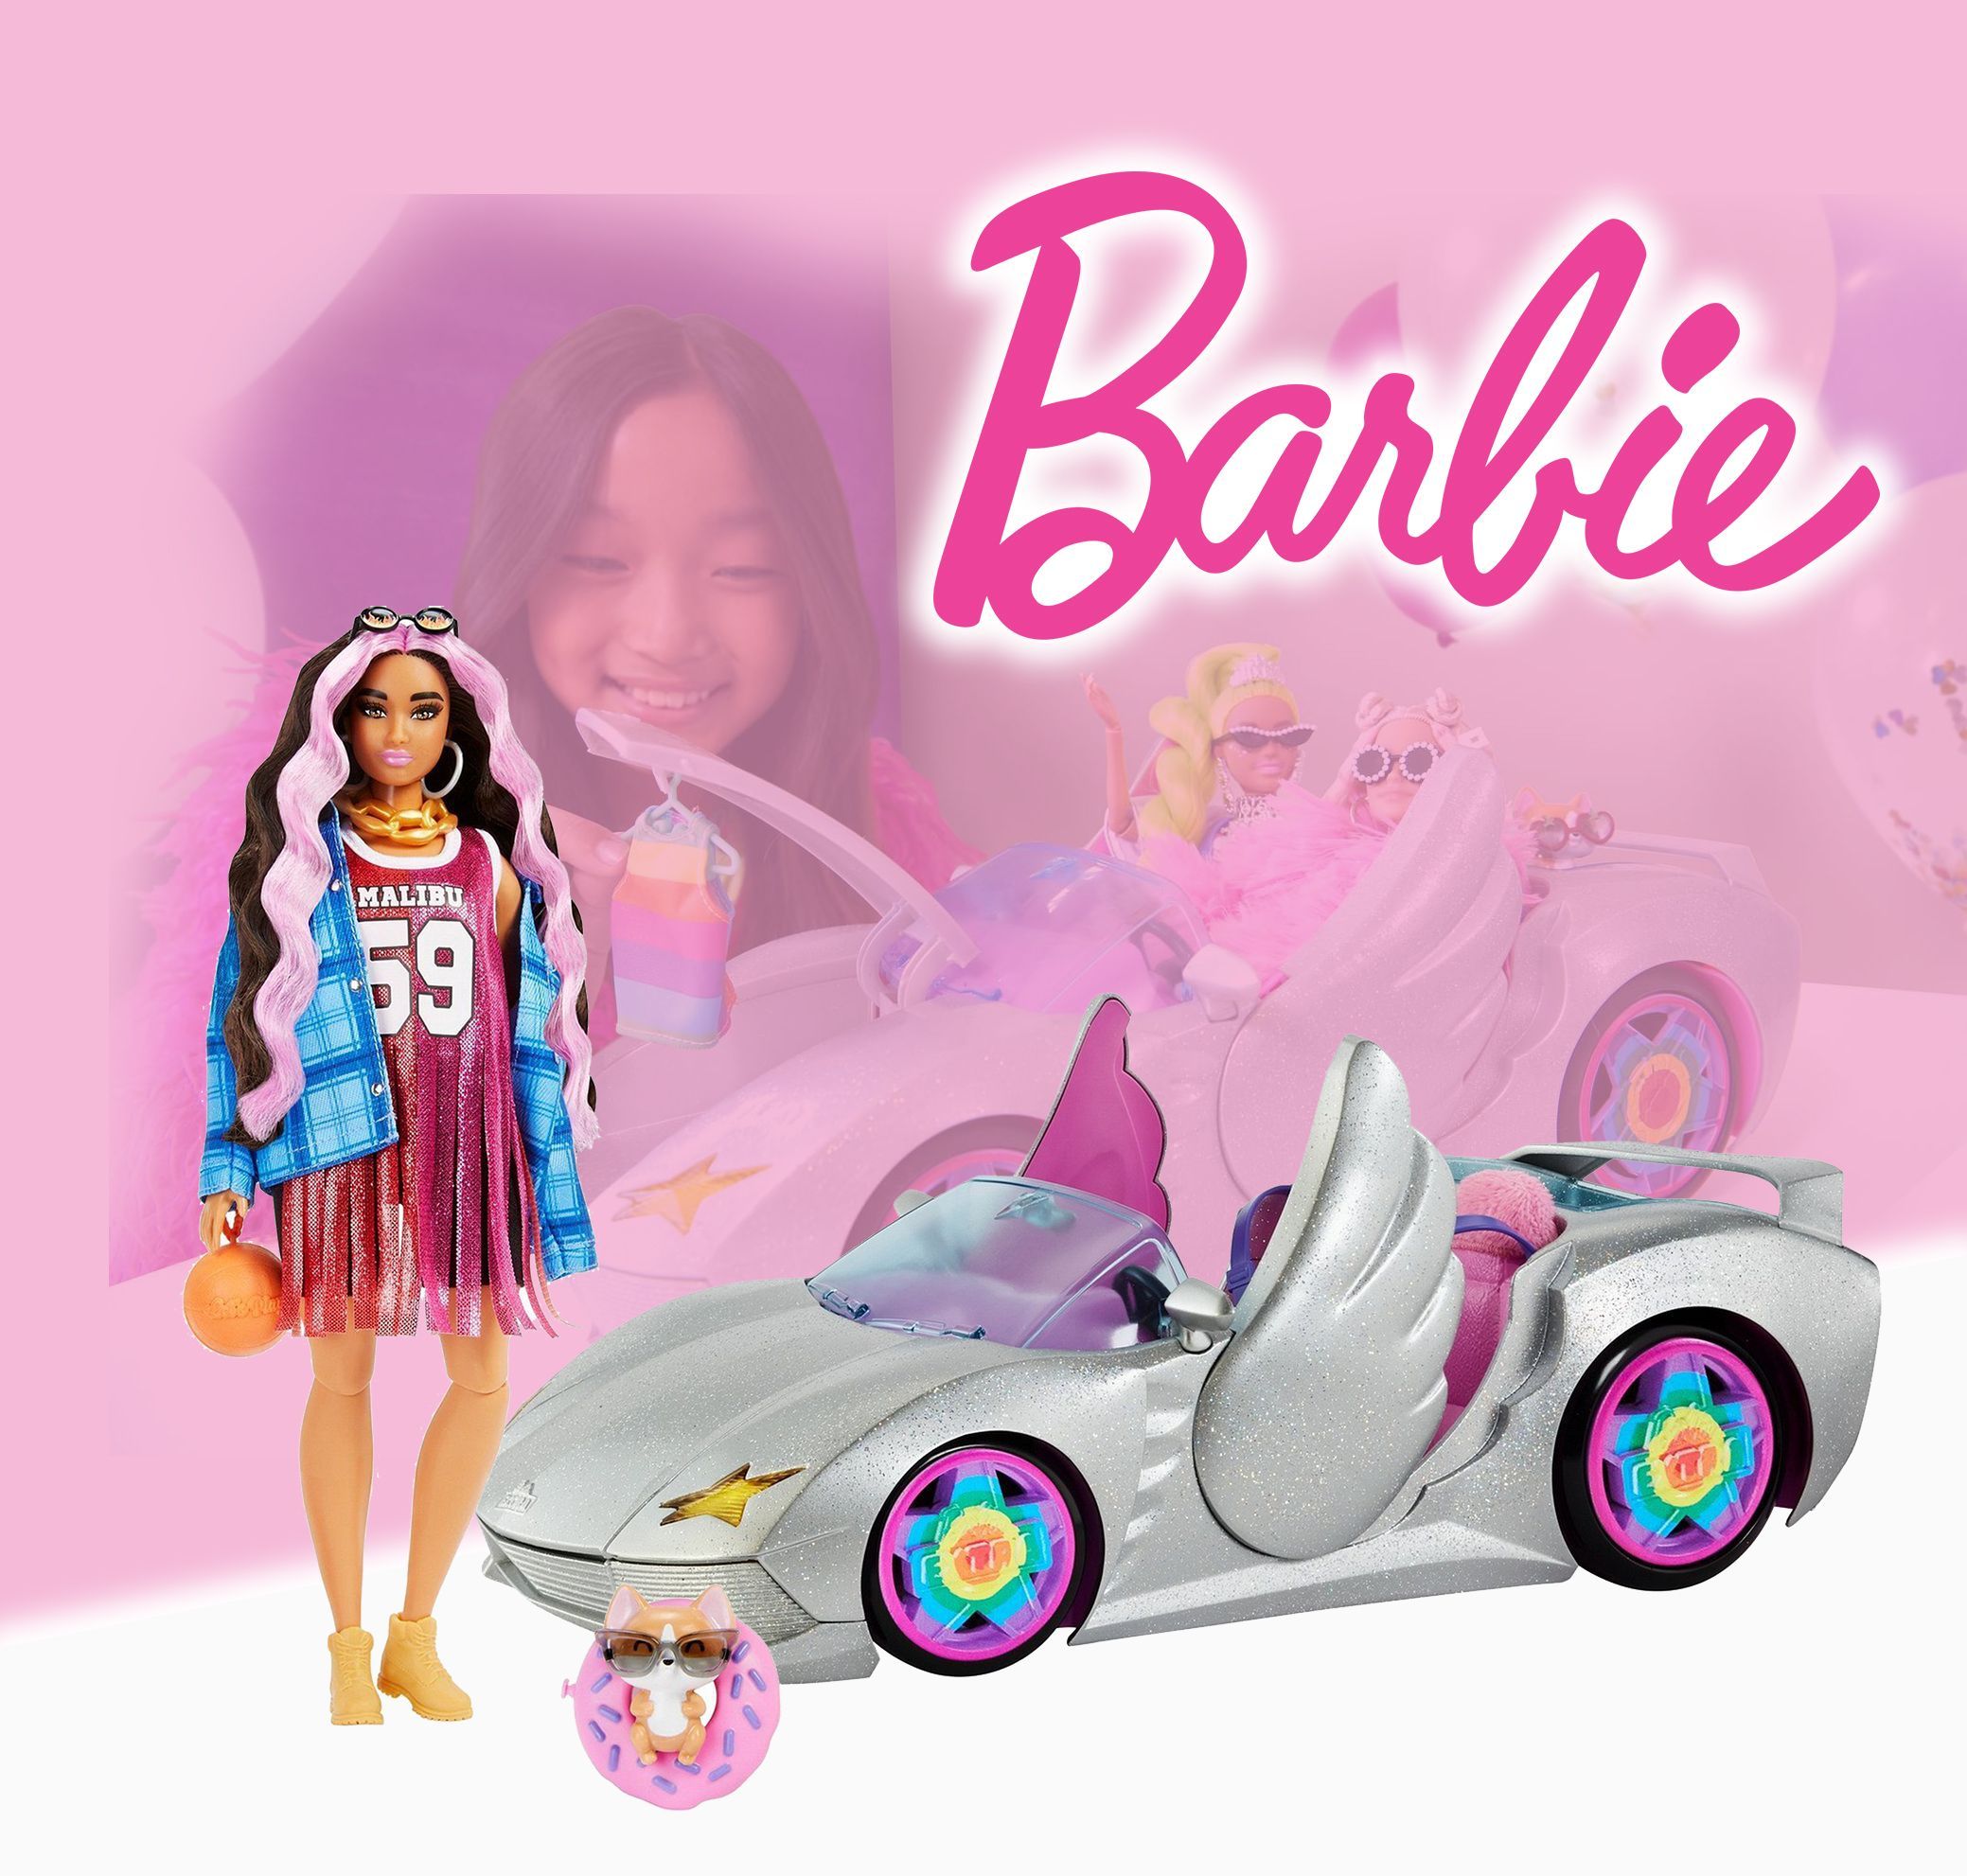 Игровой набор Кукла Barbie HDJ46 Extra Брюнетка с розовыми прядями и Машина мечты Barbie набор игровой barbie дом мечты на колесах ghl93 фургон трансформер